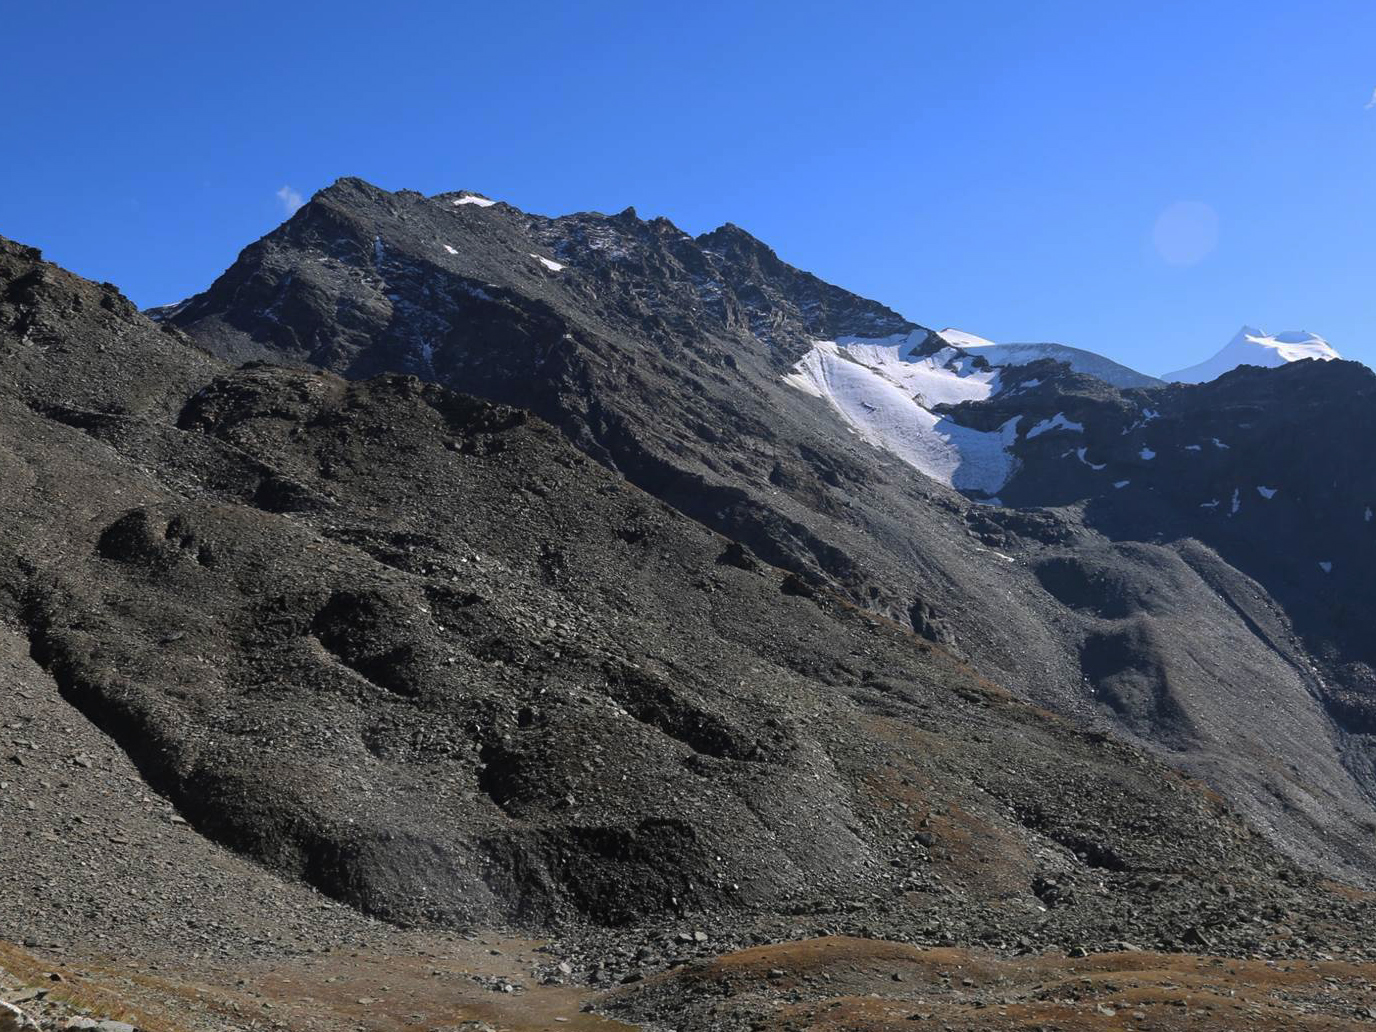 Vergr?sserte Ansicht: Der Blockgletscher (linke Bildhälfte) am Fusse des Furggwanghorns (3161 m, nicht im Bild) im Wallis verändert seine Oberfläche rasant und kriecht immer rascher talwärts.